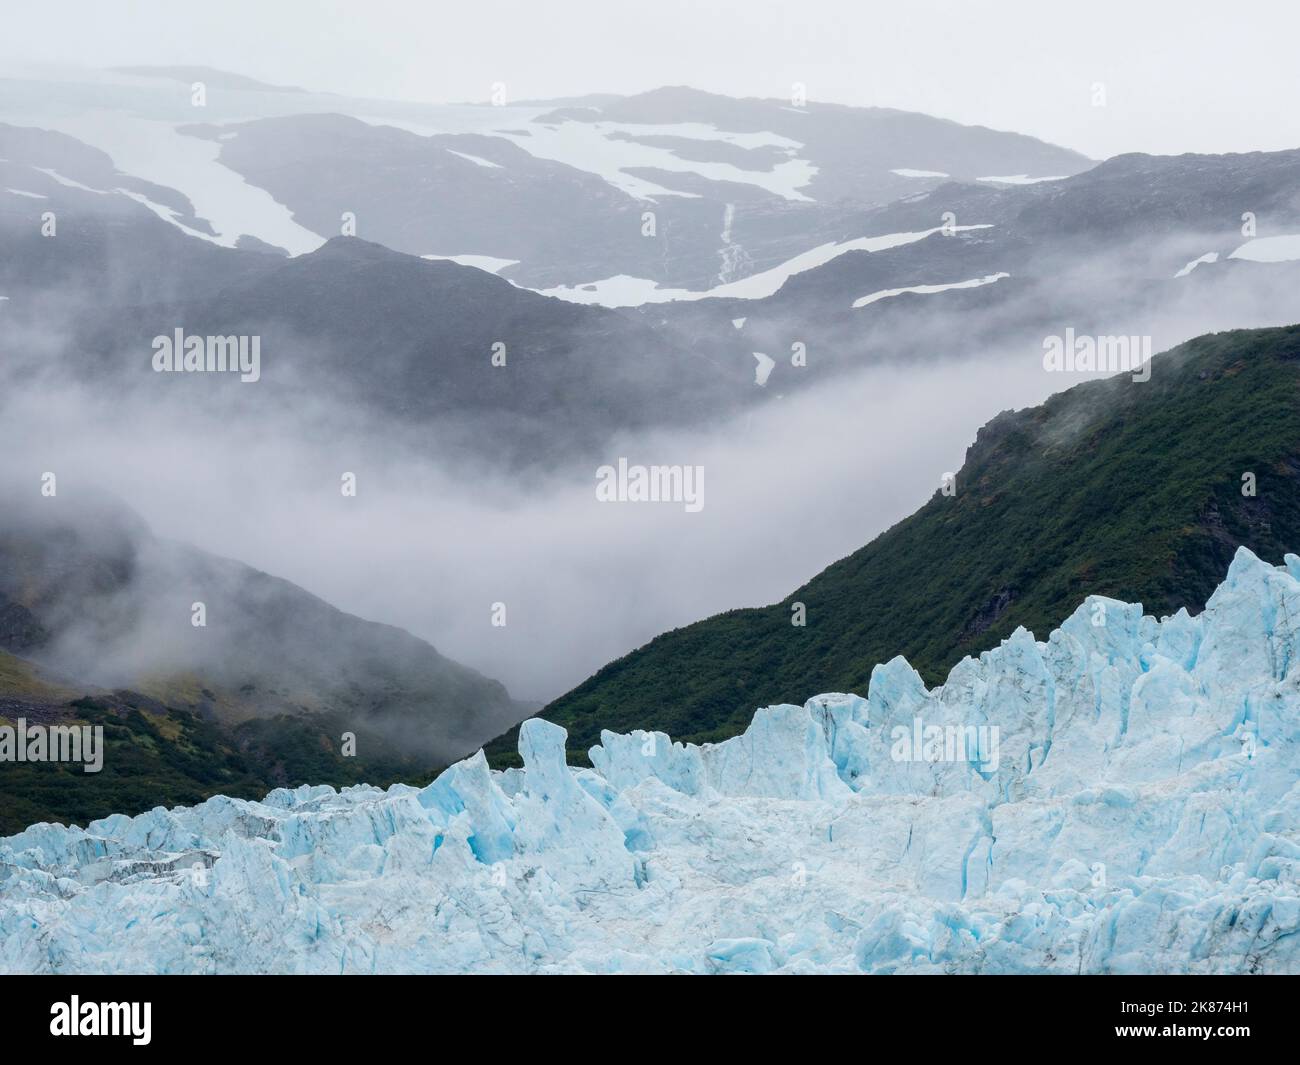 Vue sur le glacier Aialik, en sortant du champ de glace Harding, Parc national Kenai Fjords, Alaska, États-Unis d'Amérique, Amérique du Nord Banque D'Images